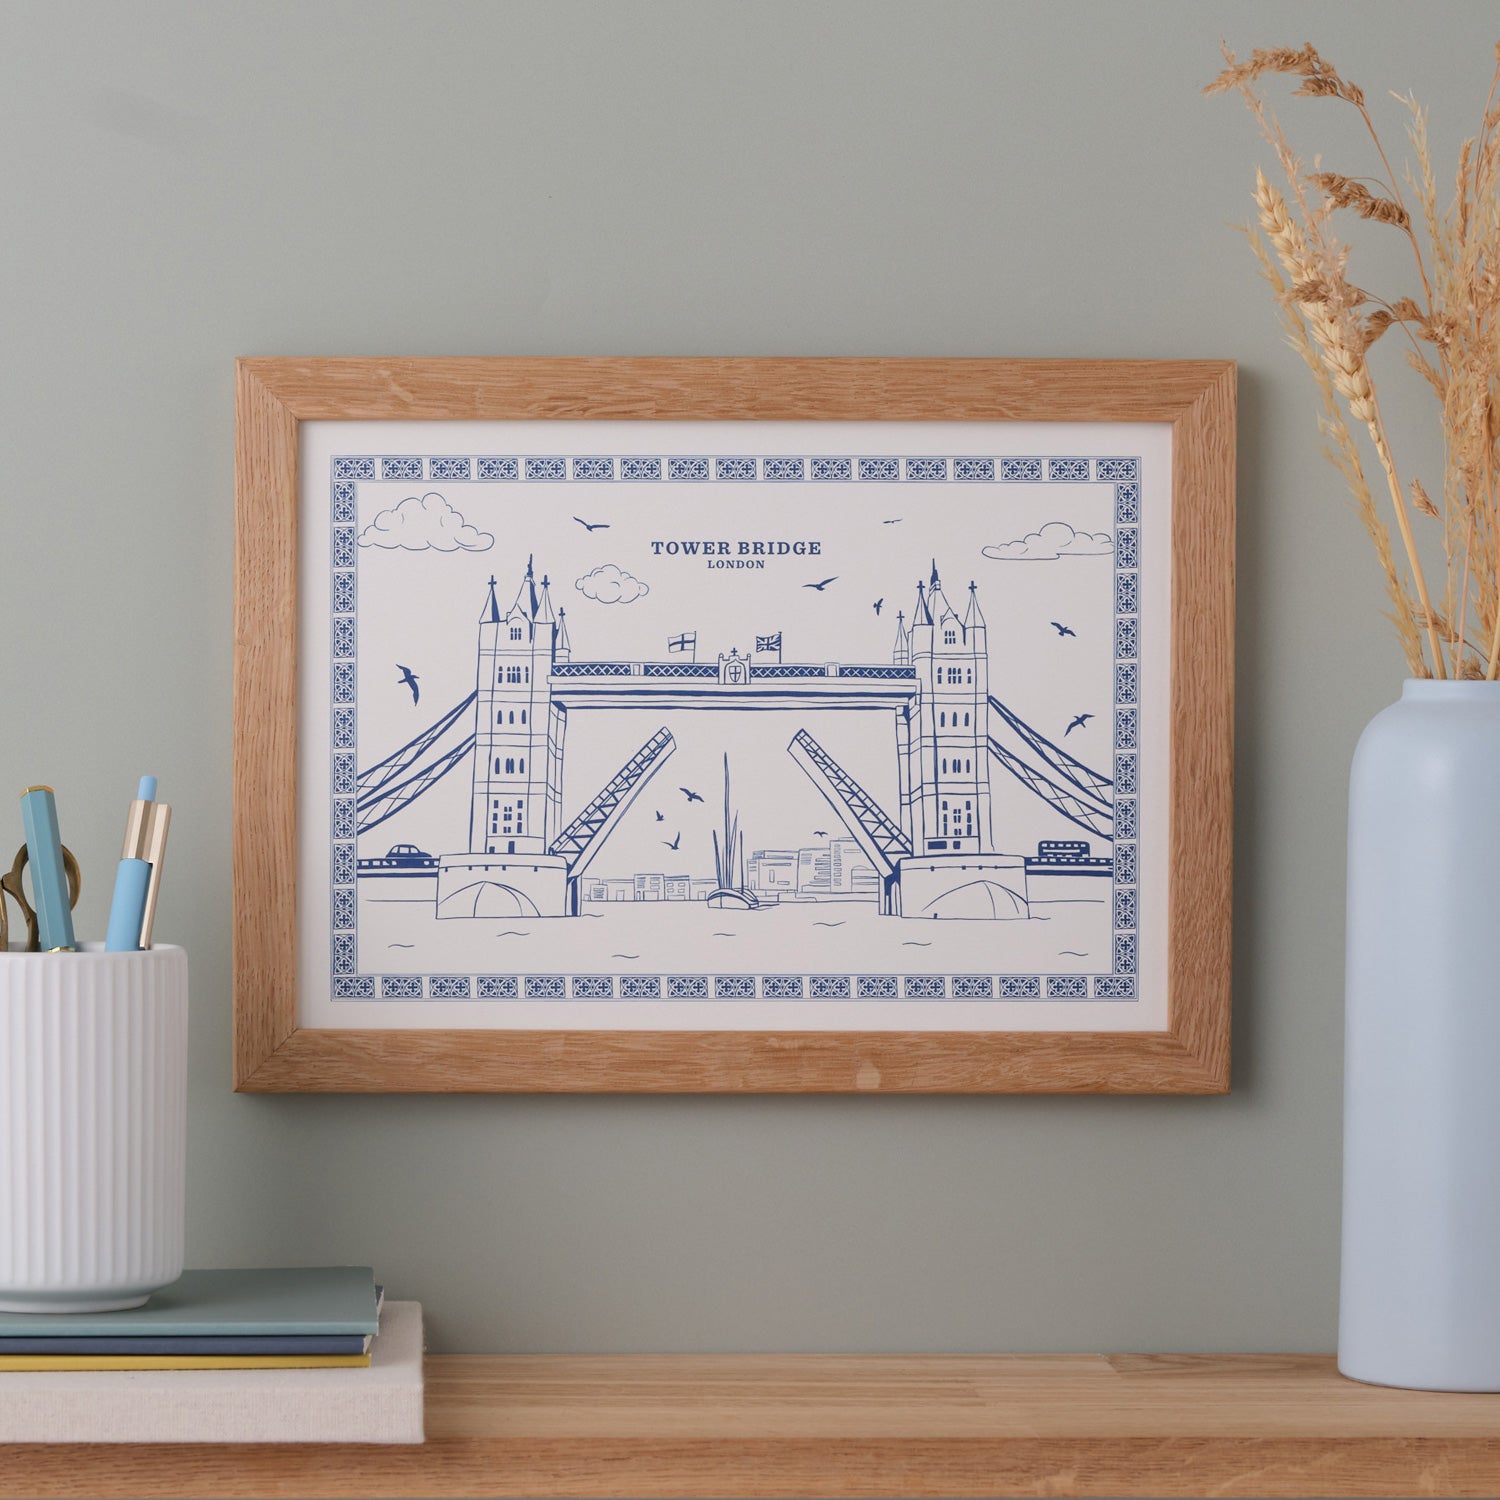 Tower Bridge A4 Print by Victoria Eggs 1